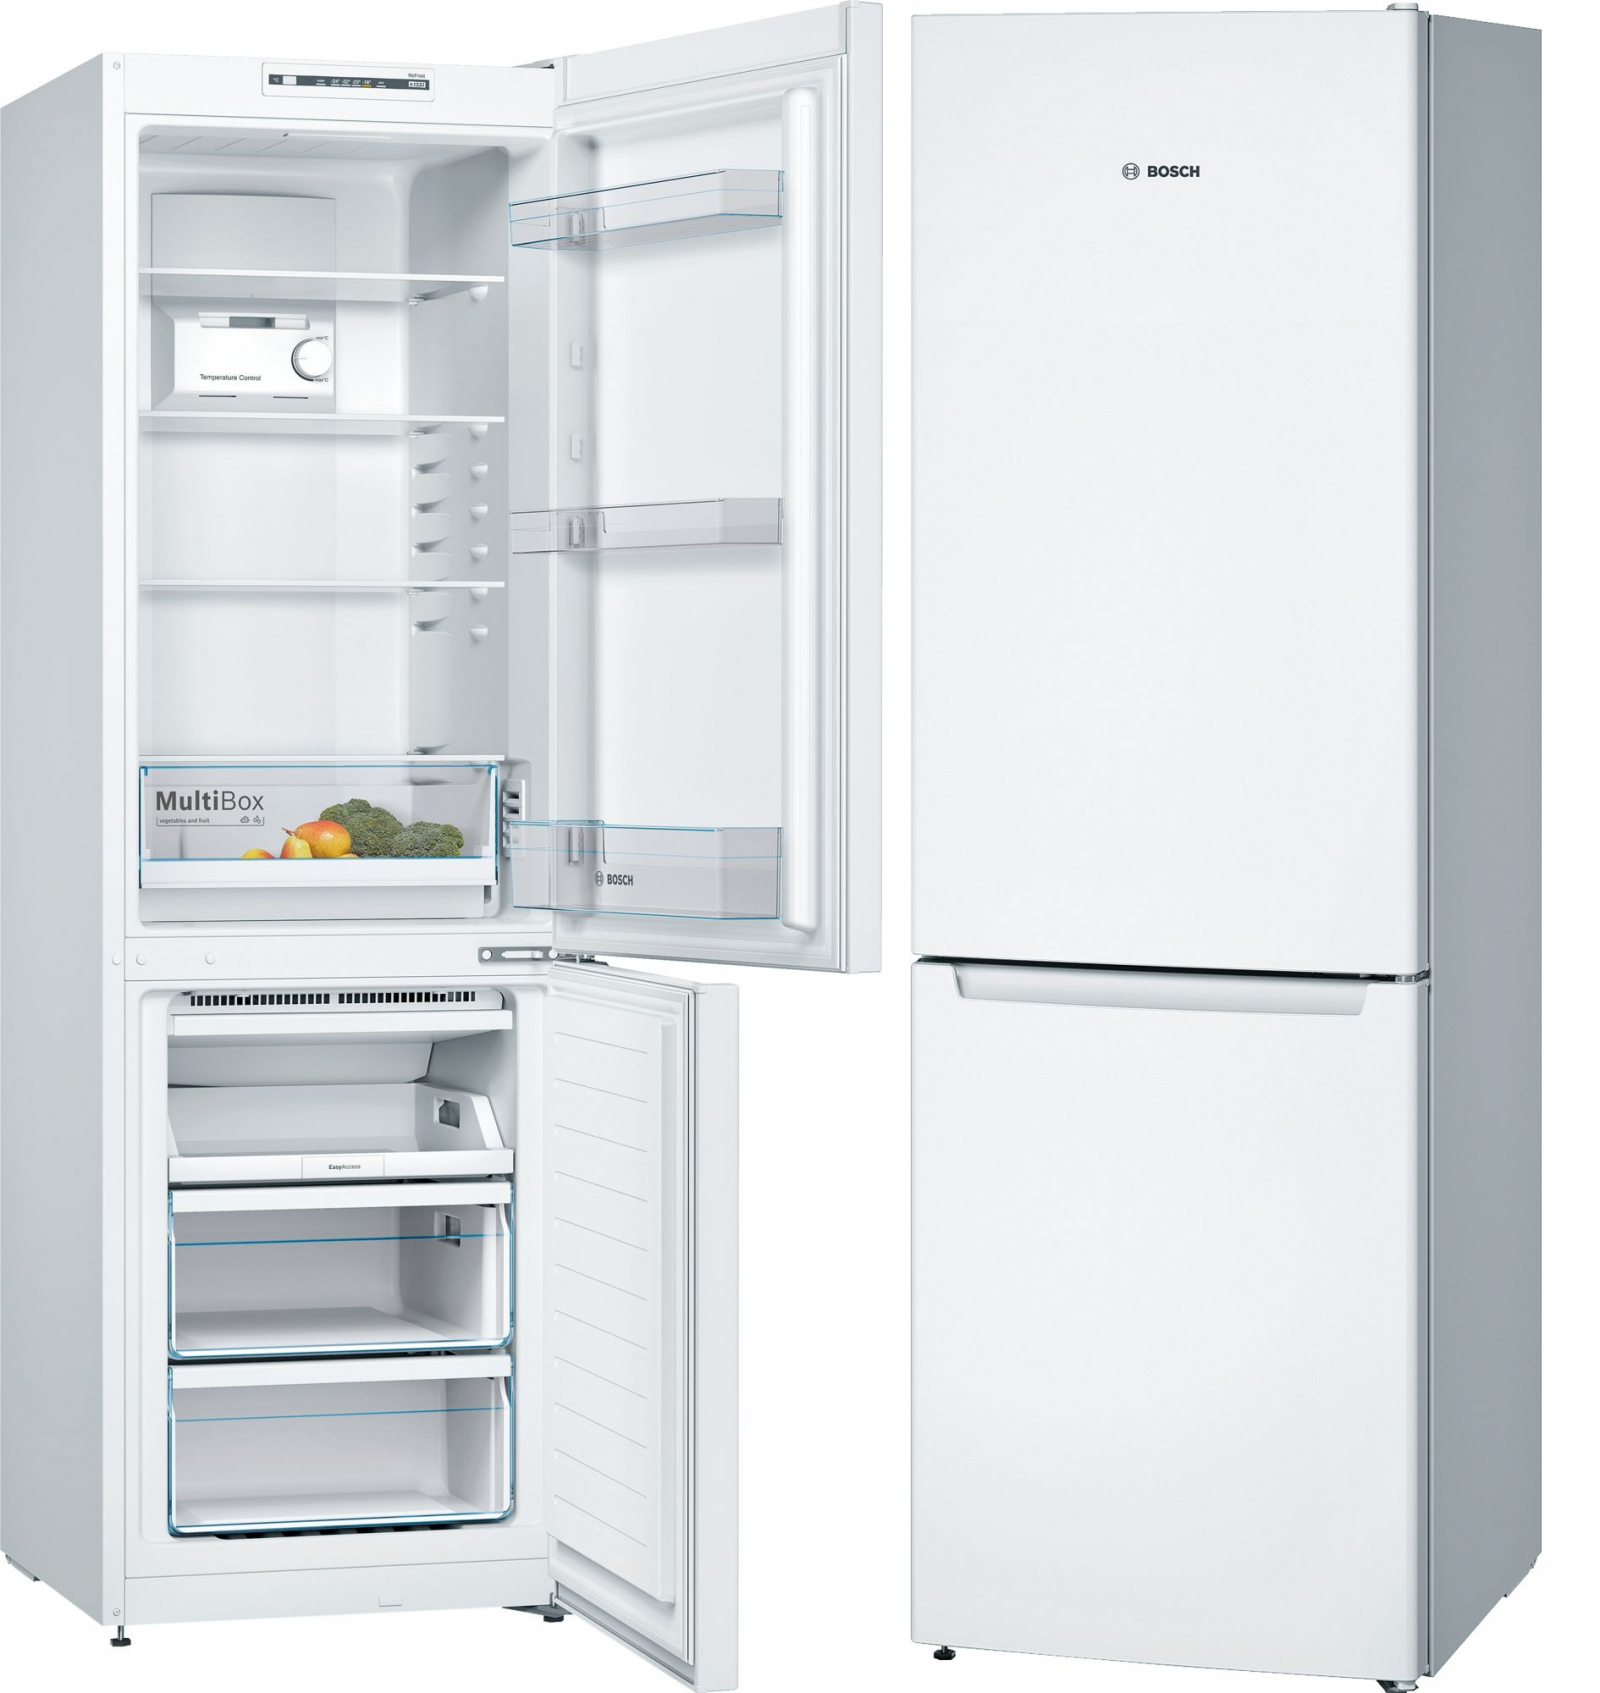 холодильник bosch kgn36nw2ar, купить в Красноярске холодильник bosch kgn36nw2ar,  купить в Красноярске дешево холодильник bosch kgn36nw2ar, купить в Красноярске минимальной цене холодильник bosch kgn36nw2ar